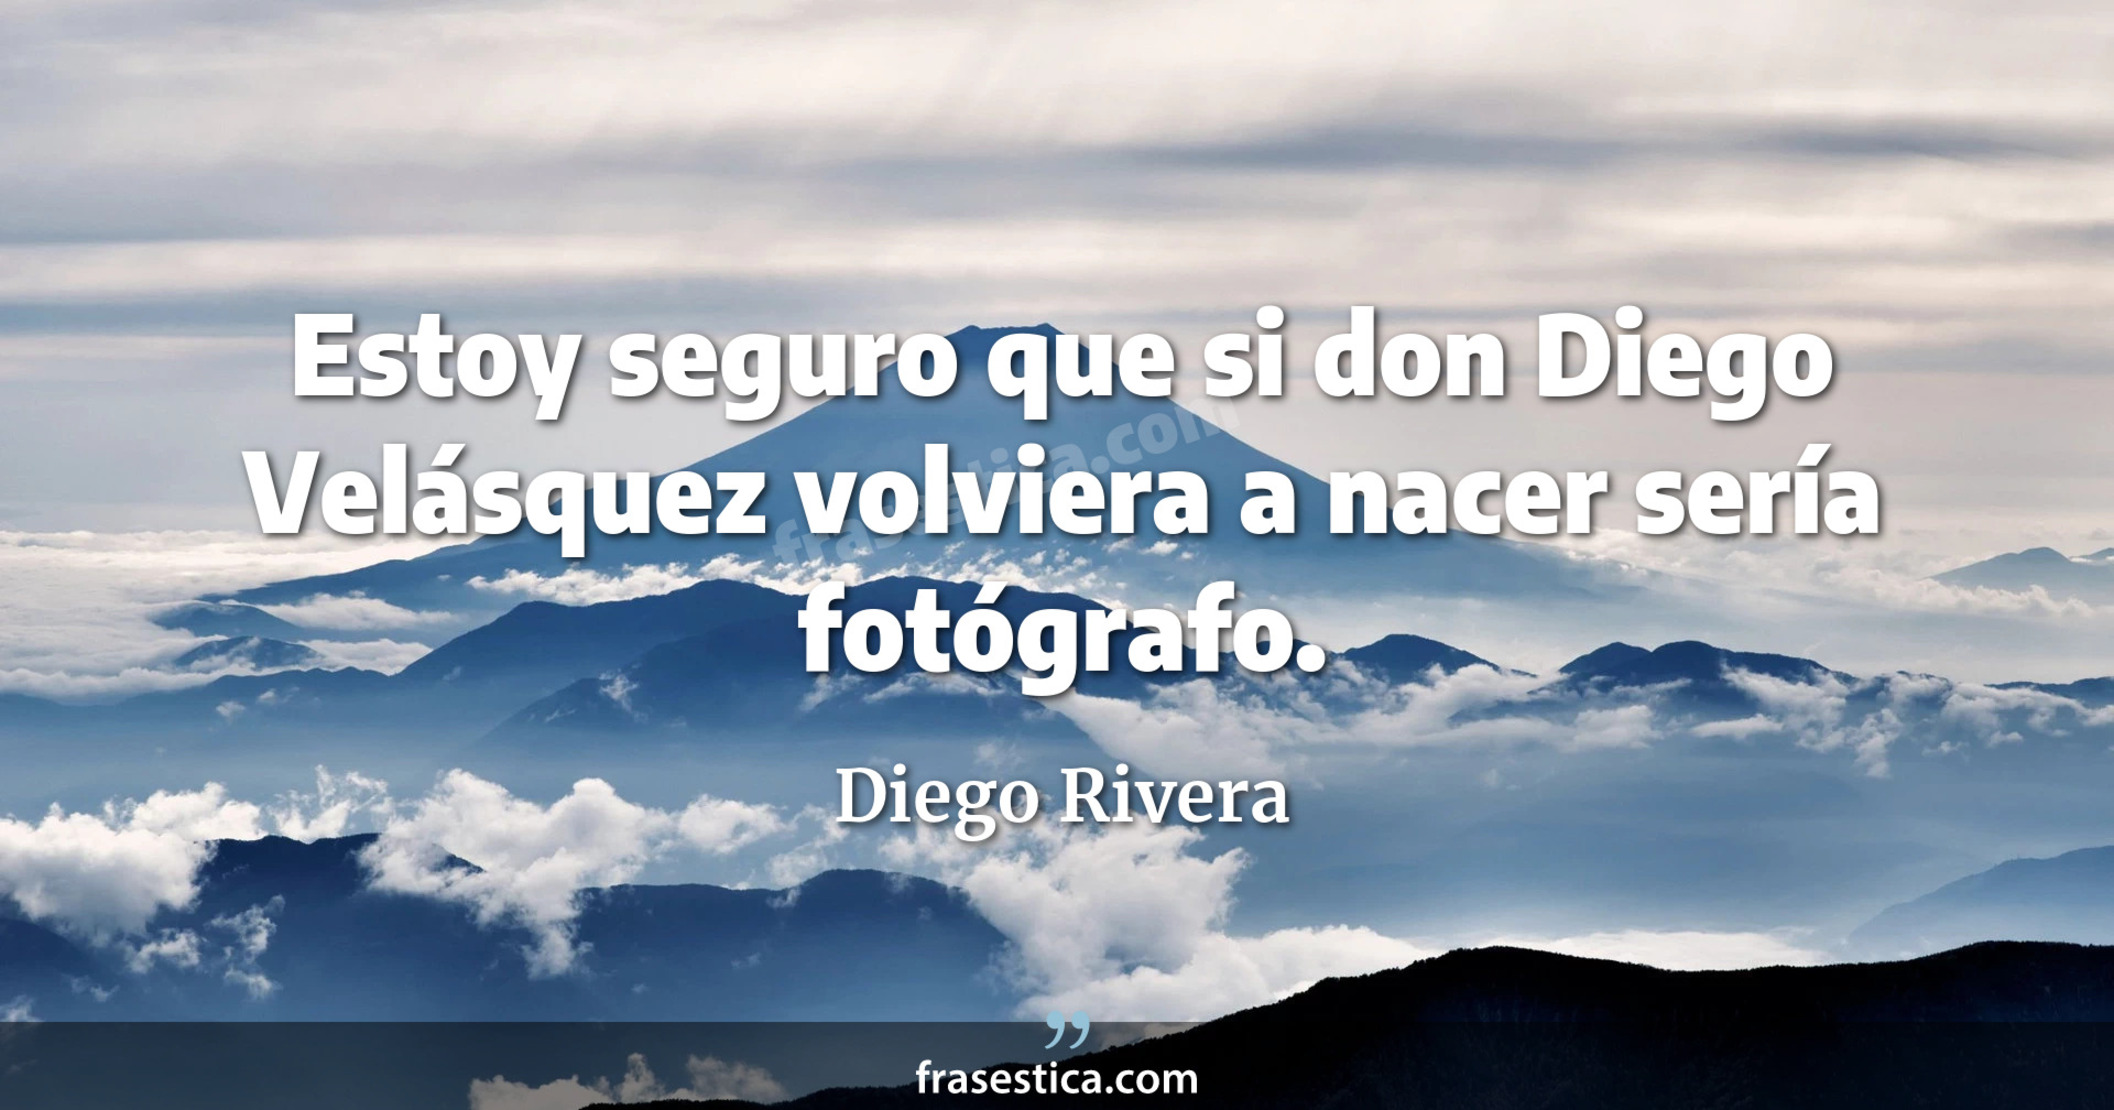 Estoy seguro que si don Diego Velásquez volviera a nacer sería fotógrafo. - Diego Rivera